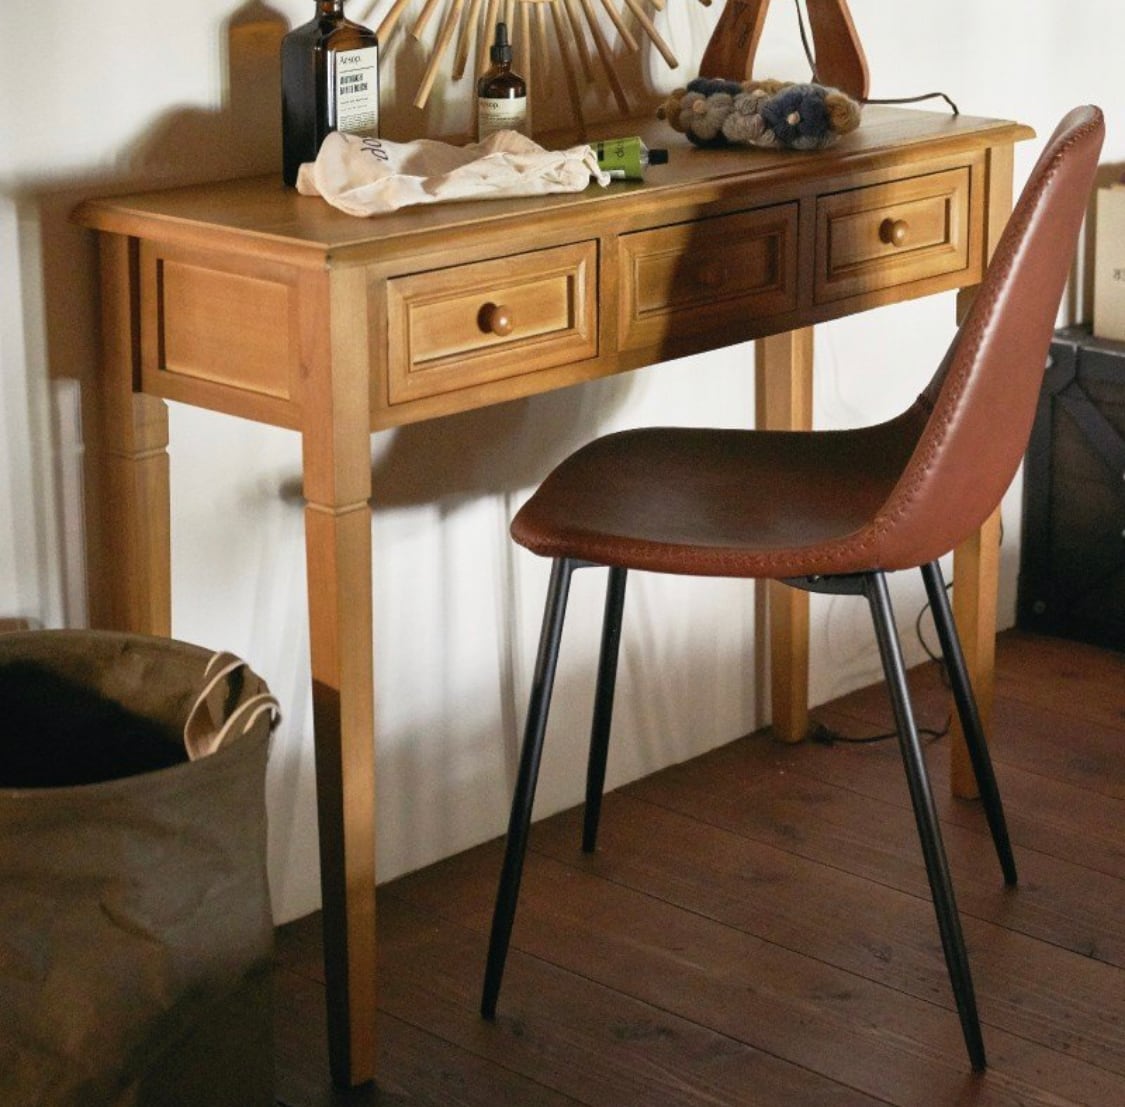 Antique Wood Console Table / アンティーク調 コンソールテーブル